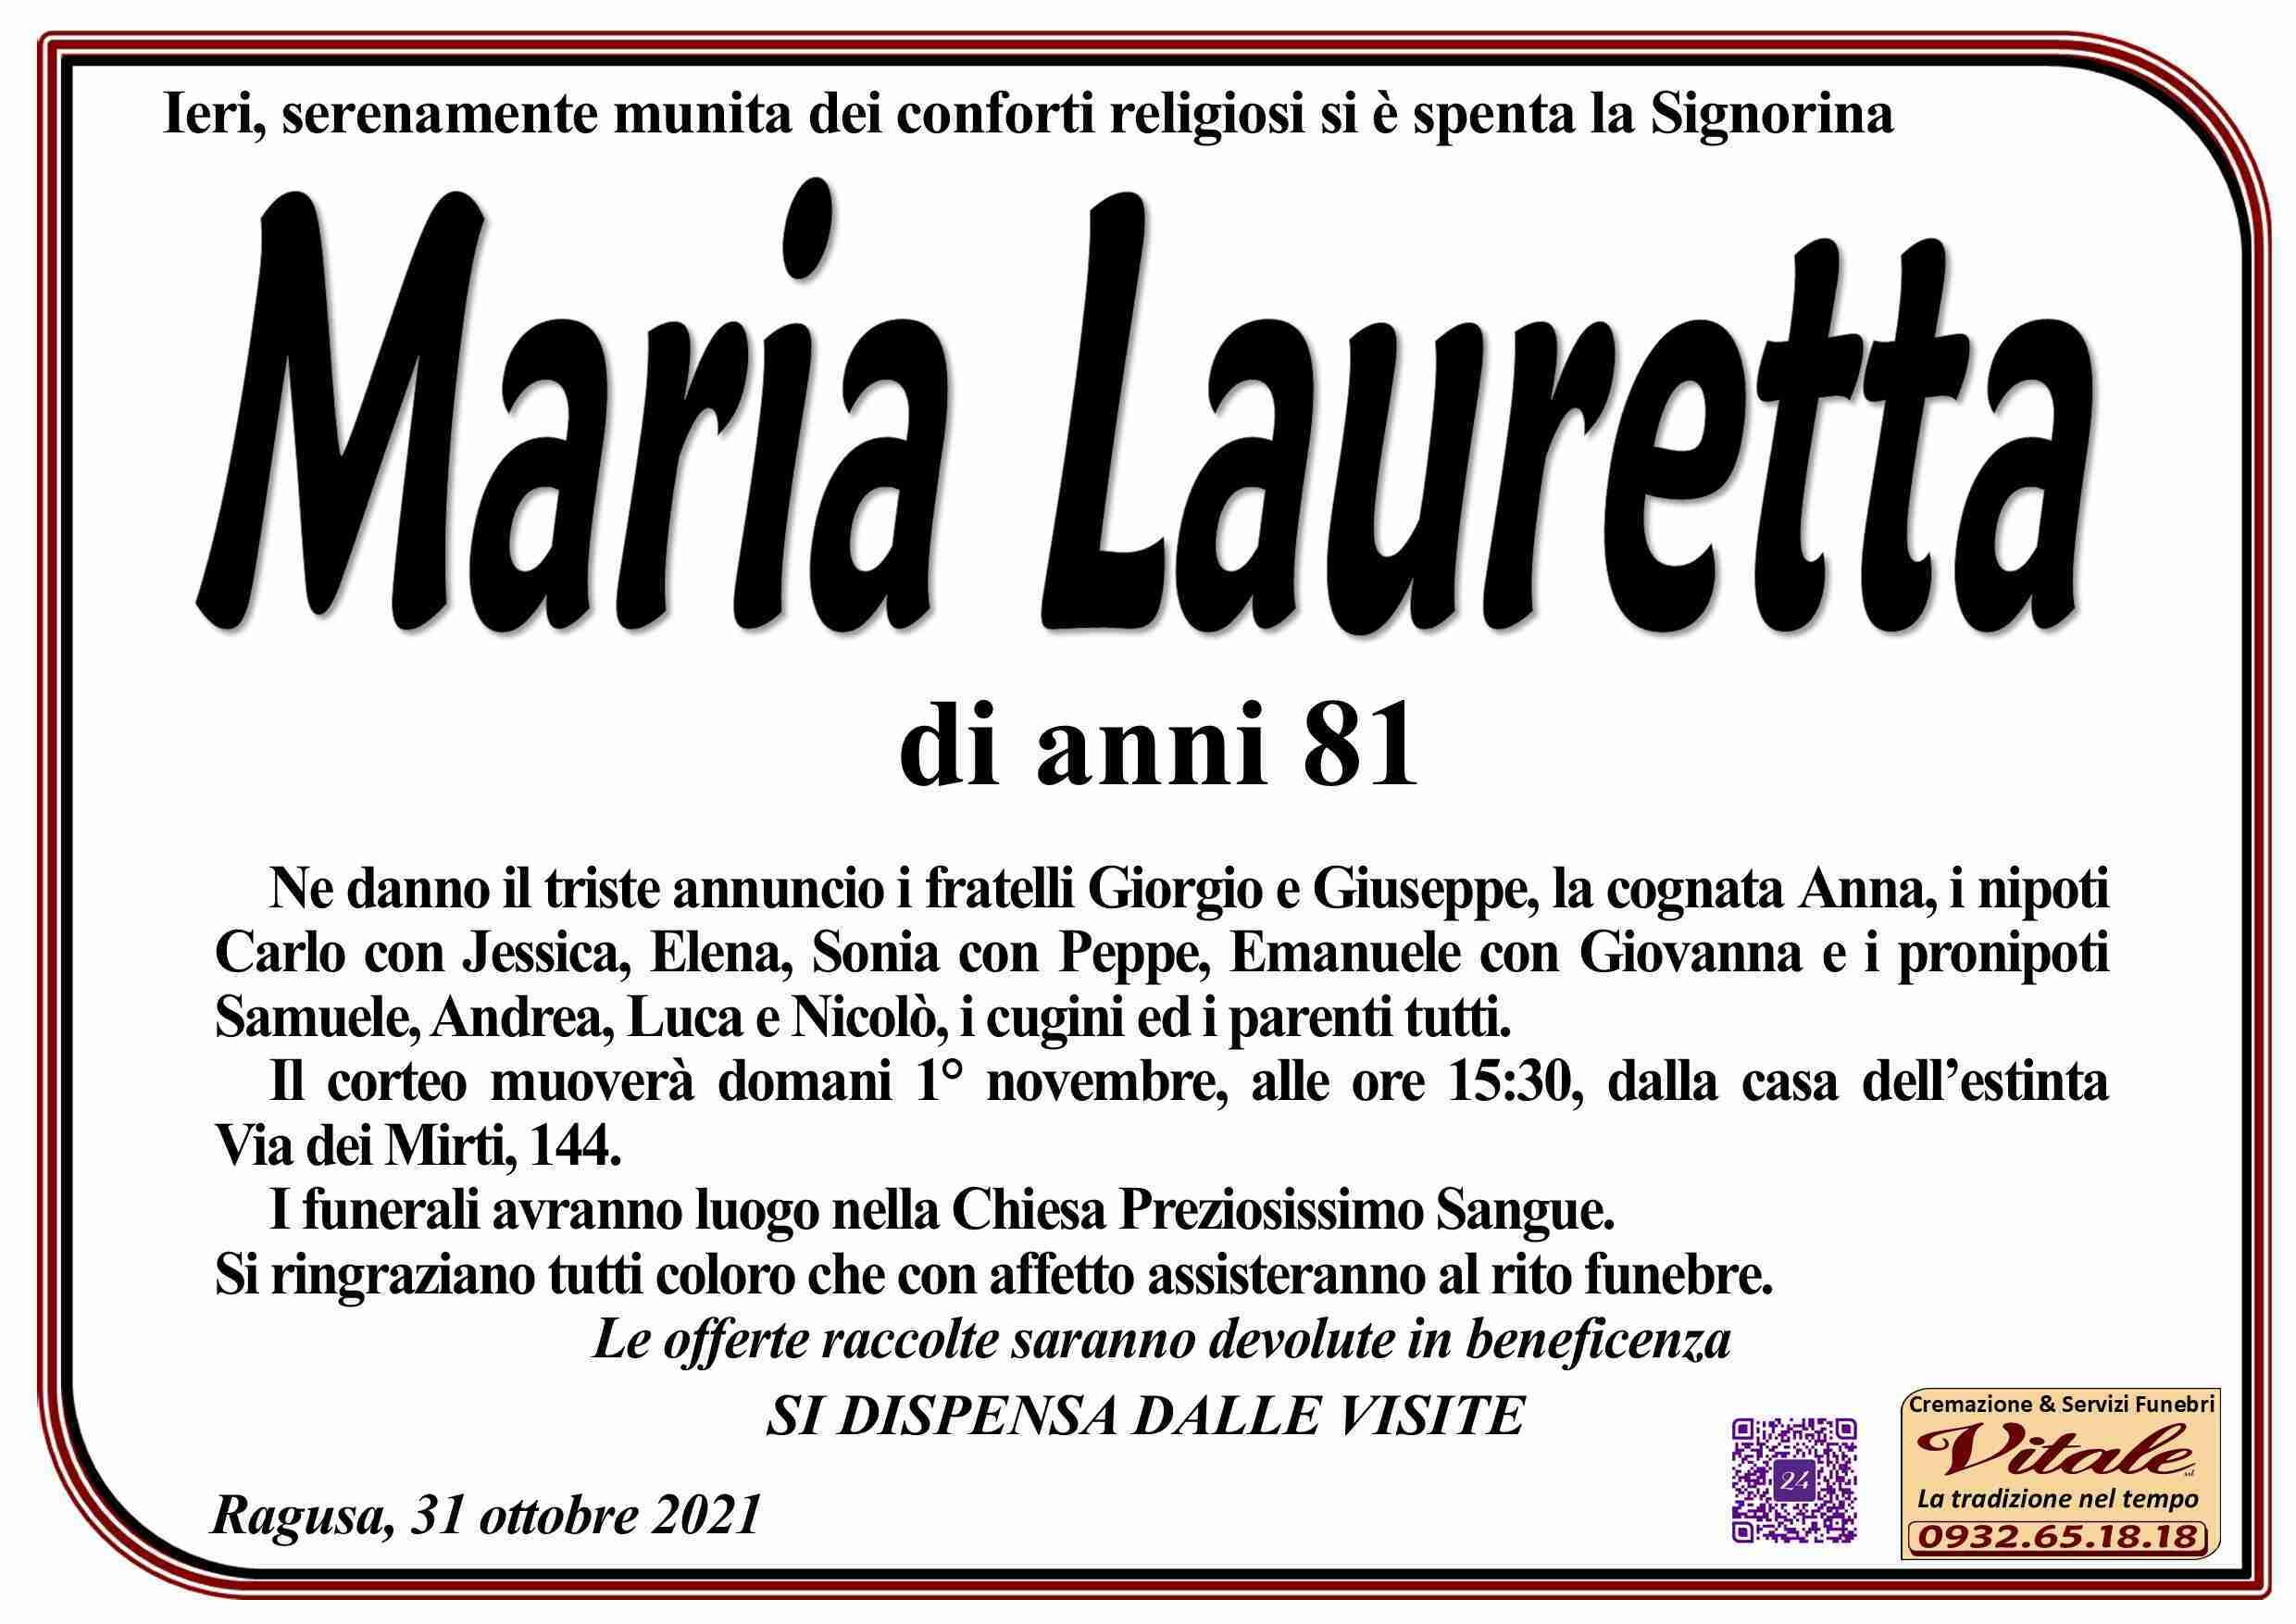 Maria Lauretta